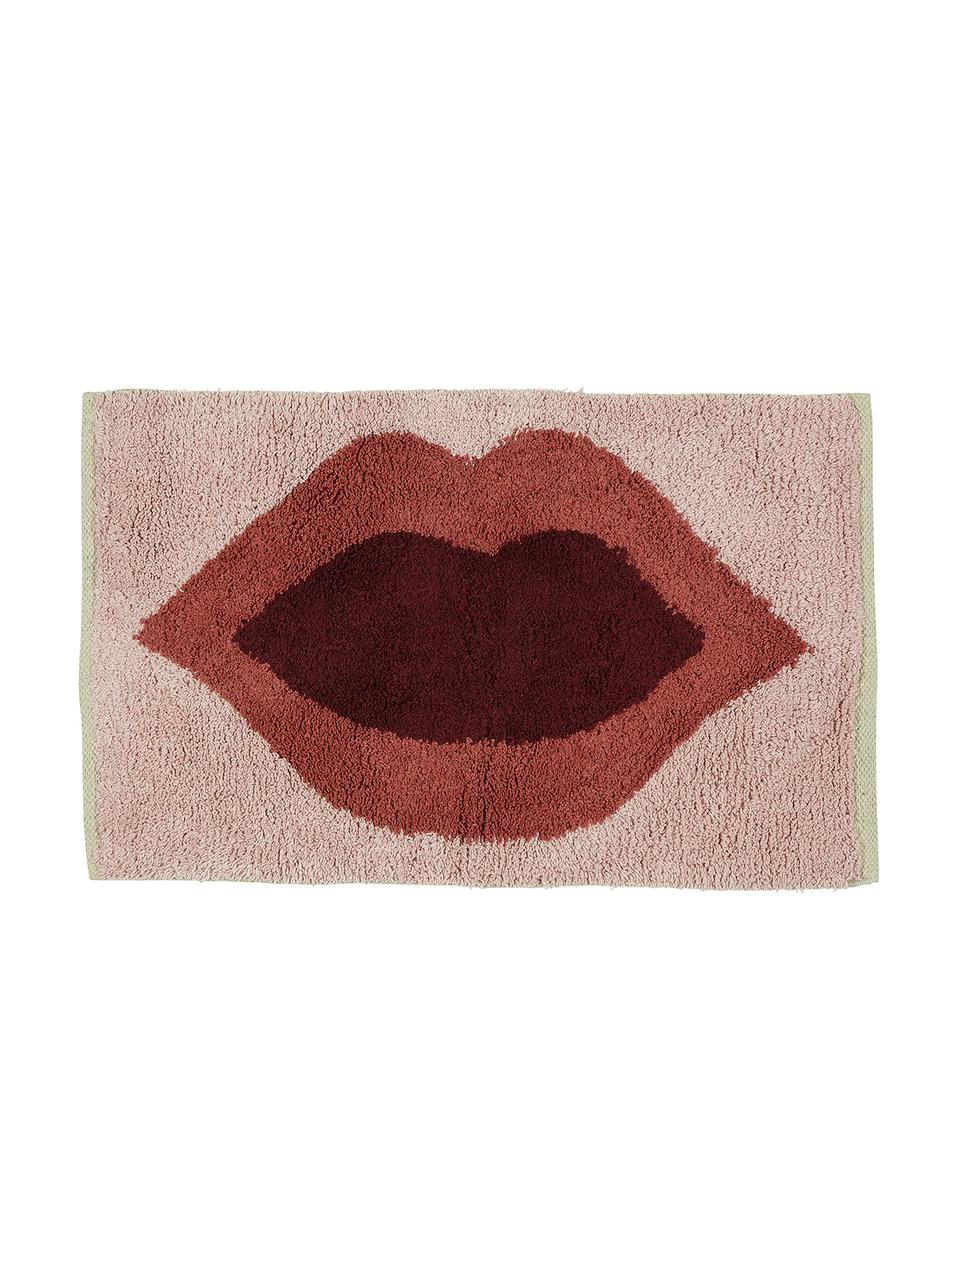 Dywanik łazienkowy Kiss, 100% bawełna
Produkt posiada spód antypoślizgowy, Blady różowy, czerwony, ciemny czerwony, S 60 x D 90 cm